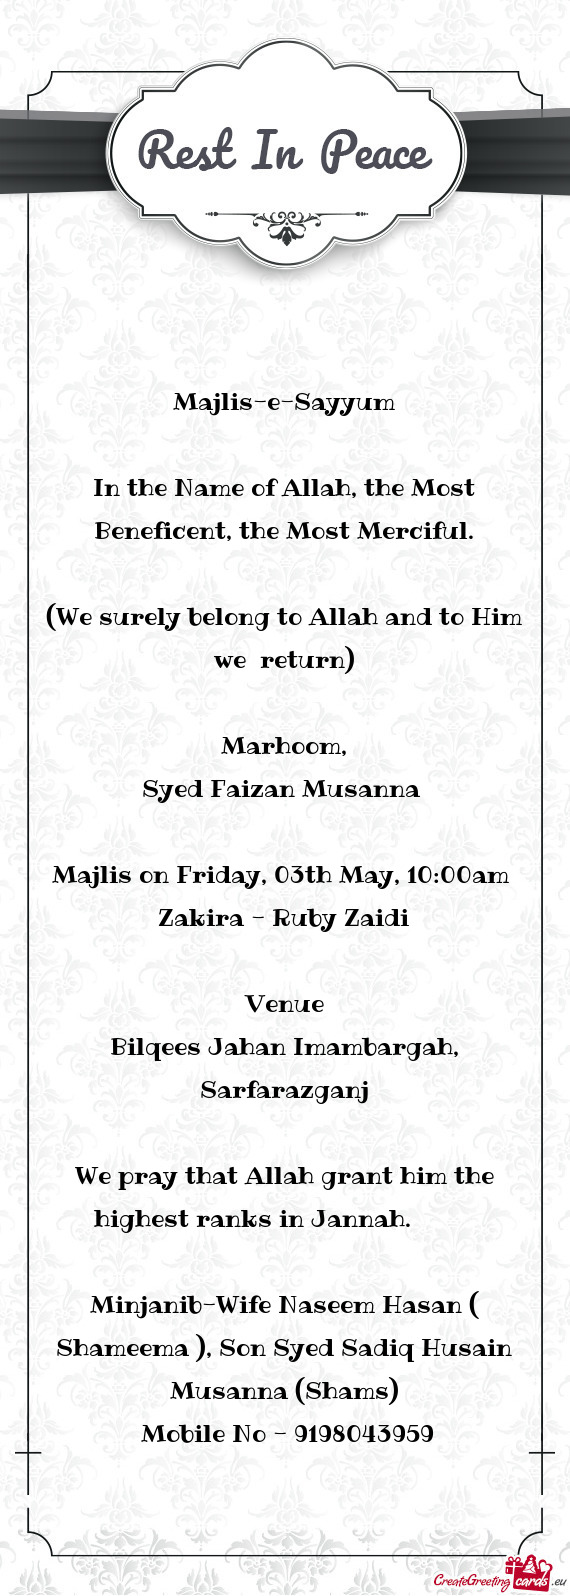 Majlis on Friday, 03th May, 10:00am